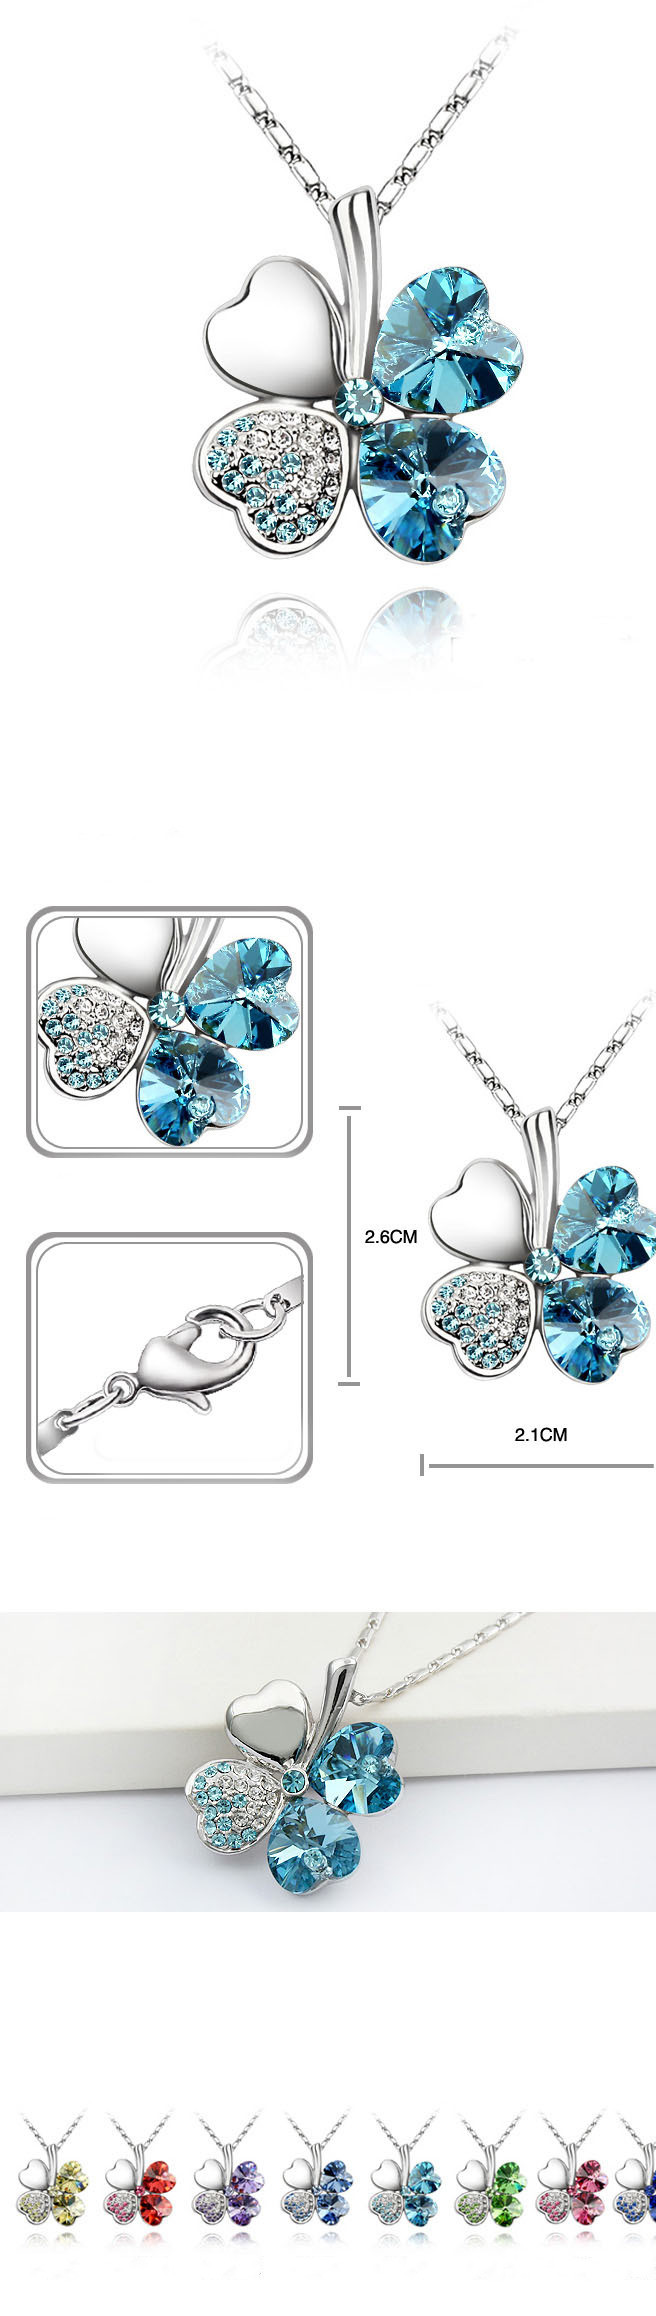 a59ad2a0 aadd 4143 8dd1 fb2c3645d6d8 - Four-leaf clover crystal necklace earrings